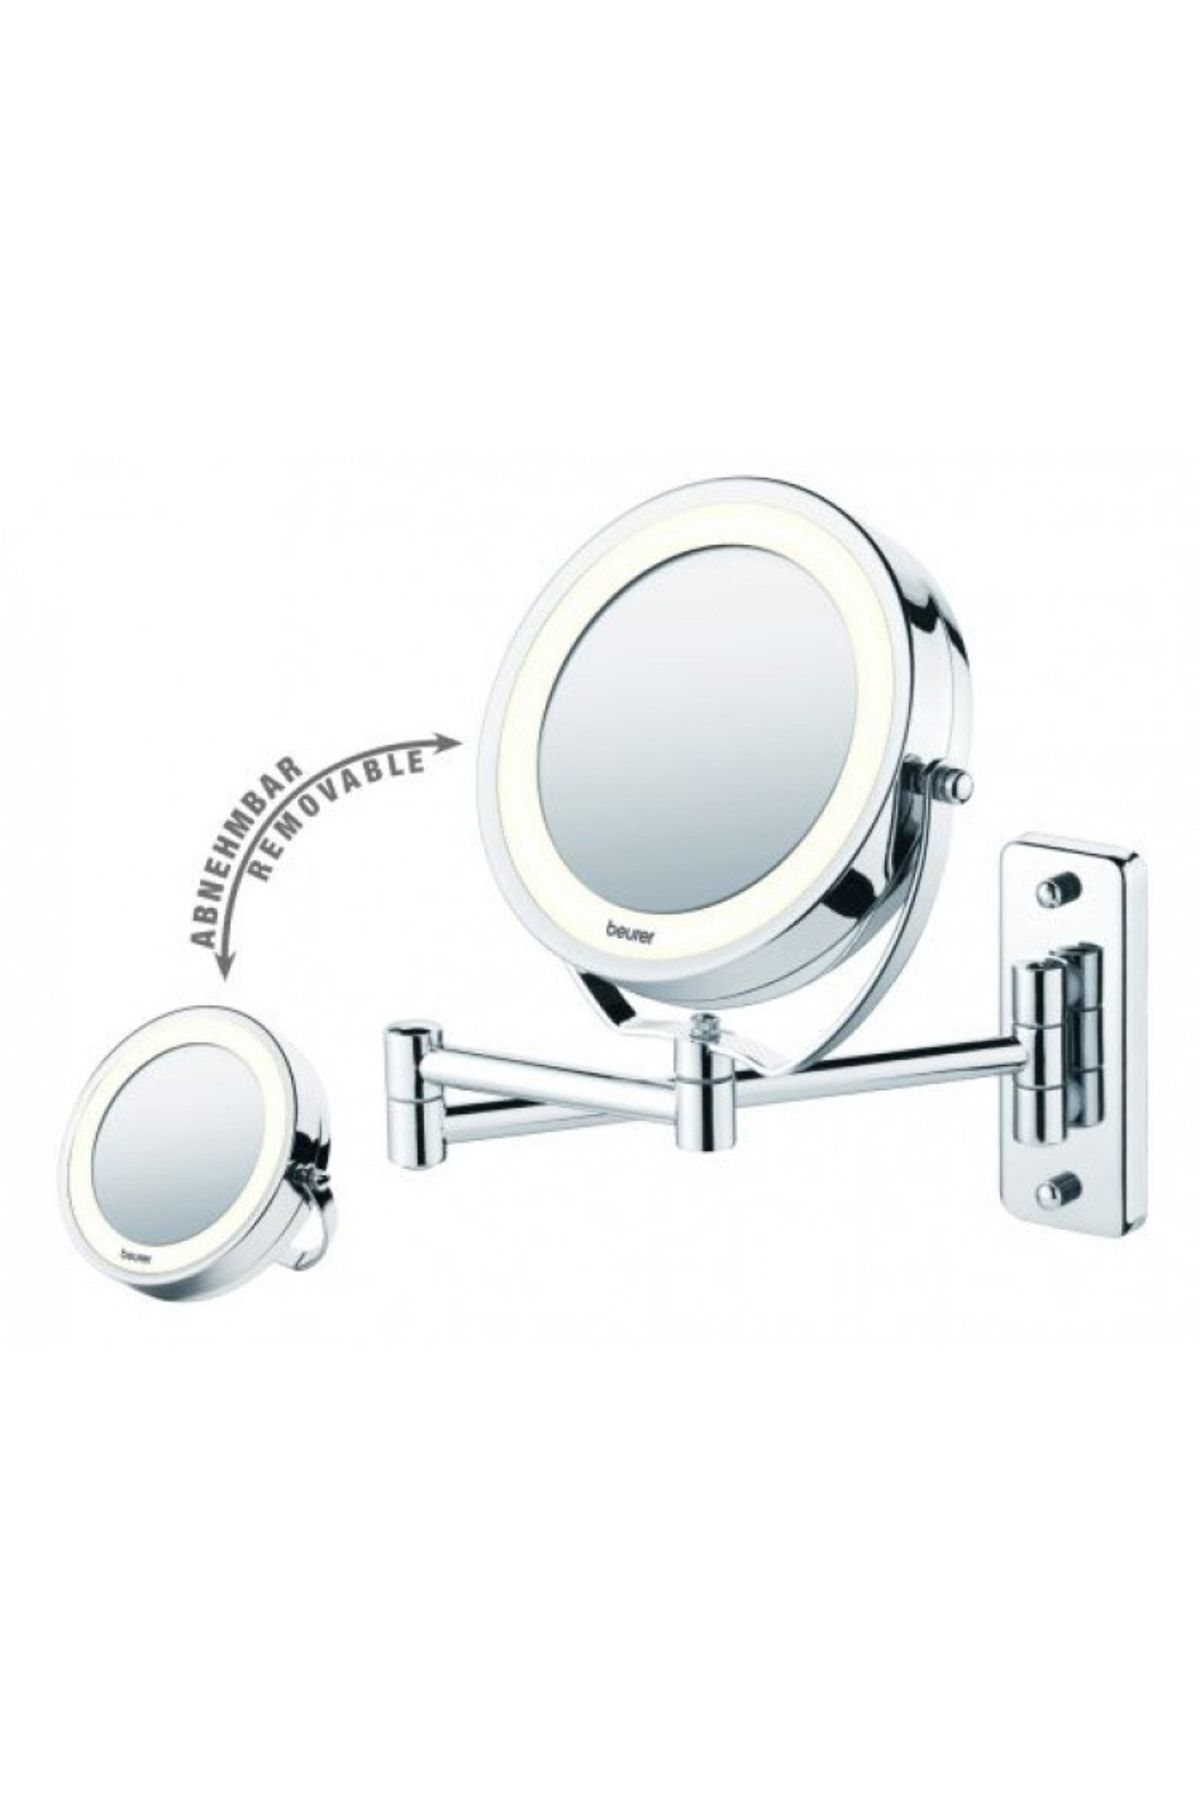 Beurer Bs 59 Işıklı Sabit-taşınabilen Makyaj Banyo Aynası